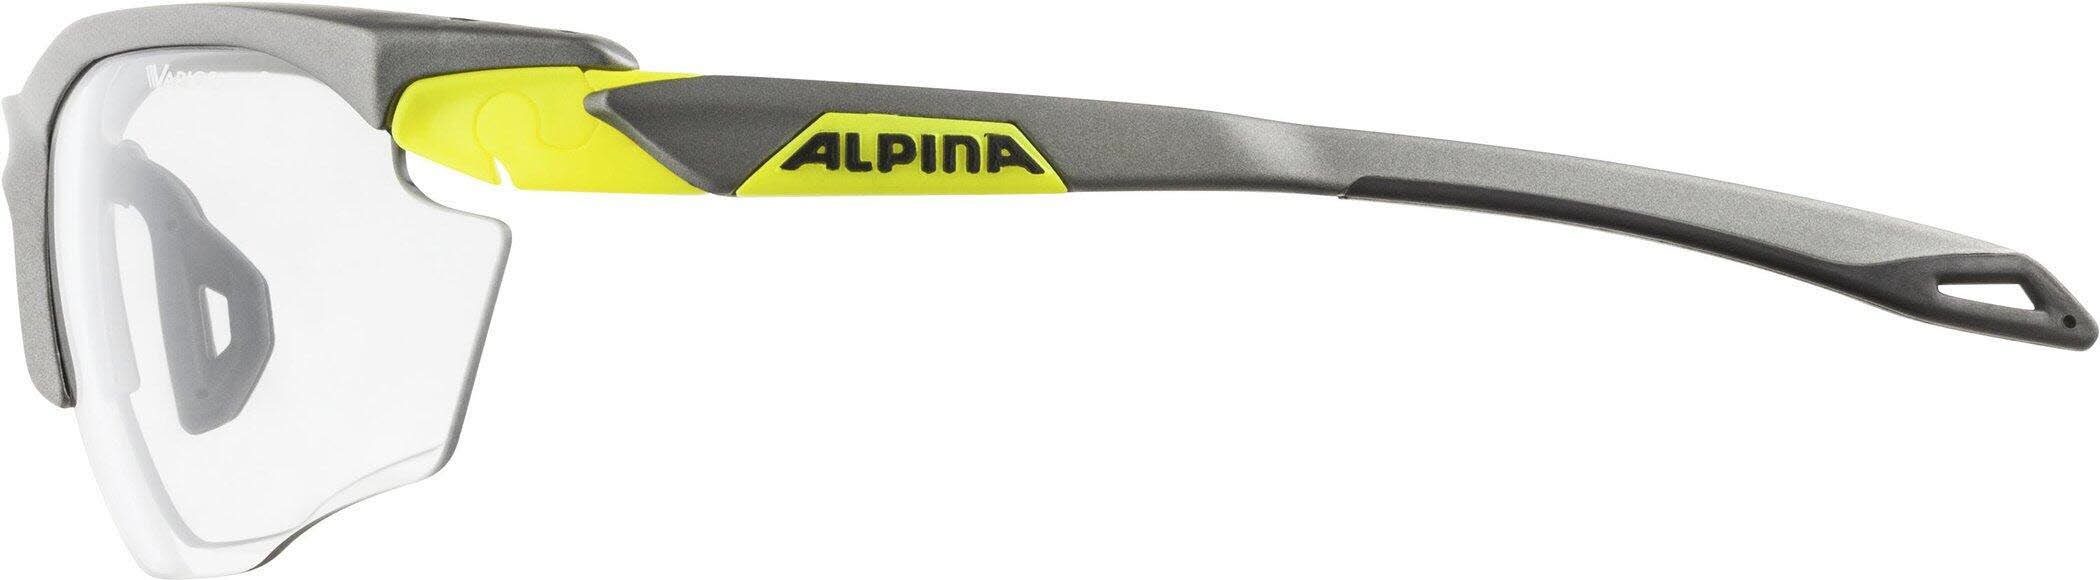 Alpina Skibrille tin-neon-yellow matt